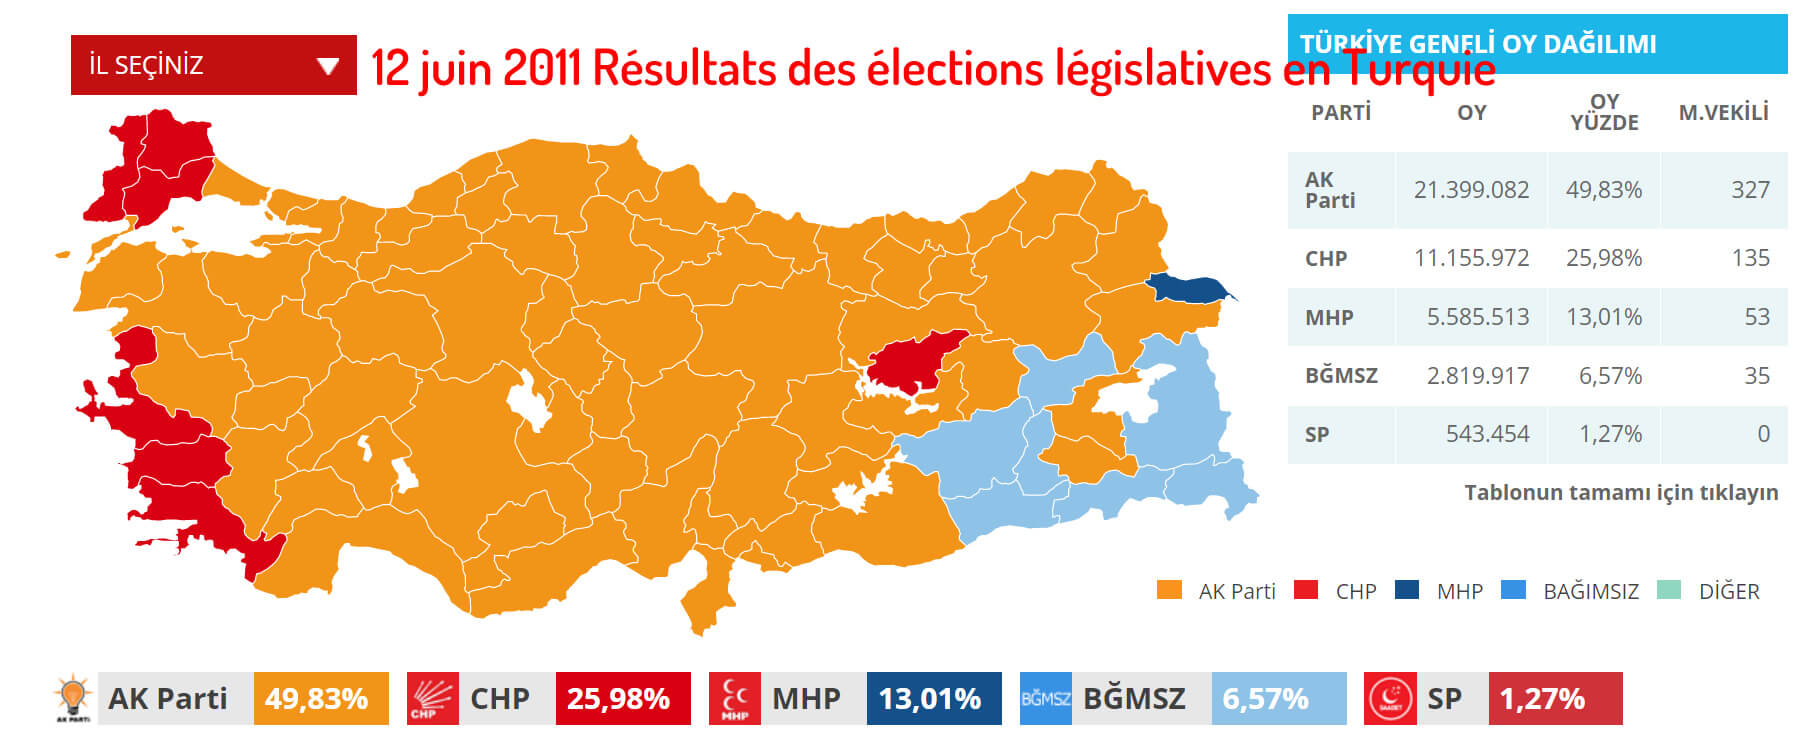 12 juin 2011 Résultats des élections législatives en Turquie